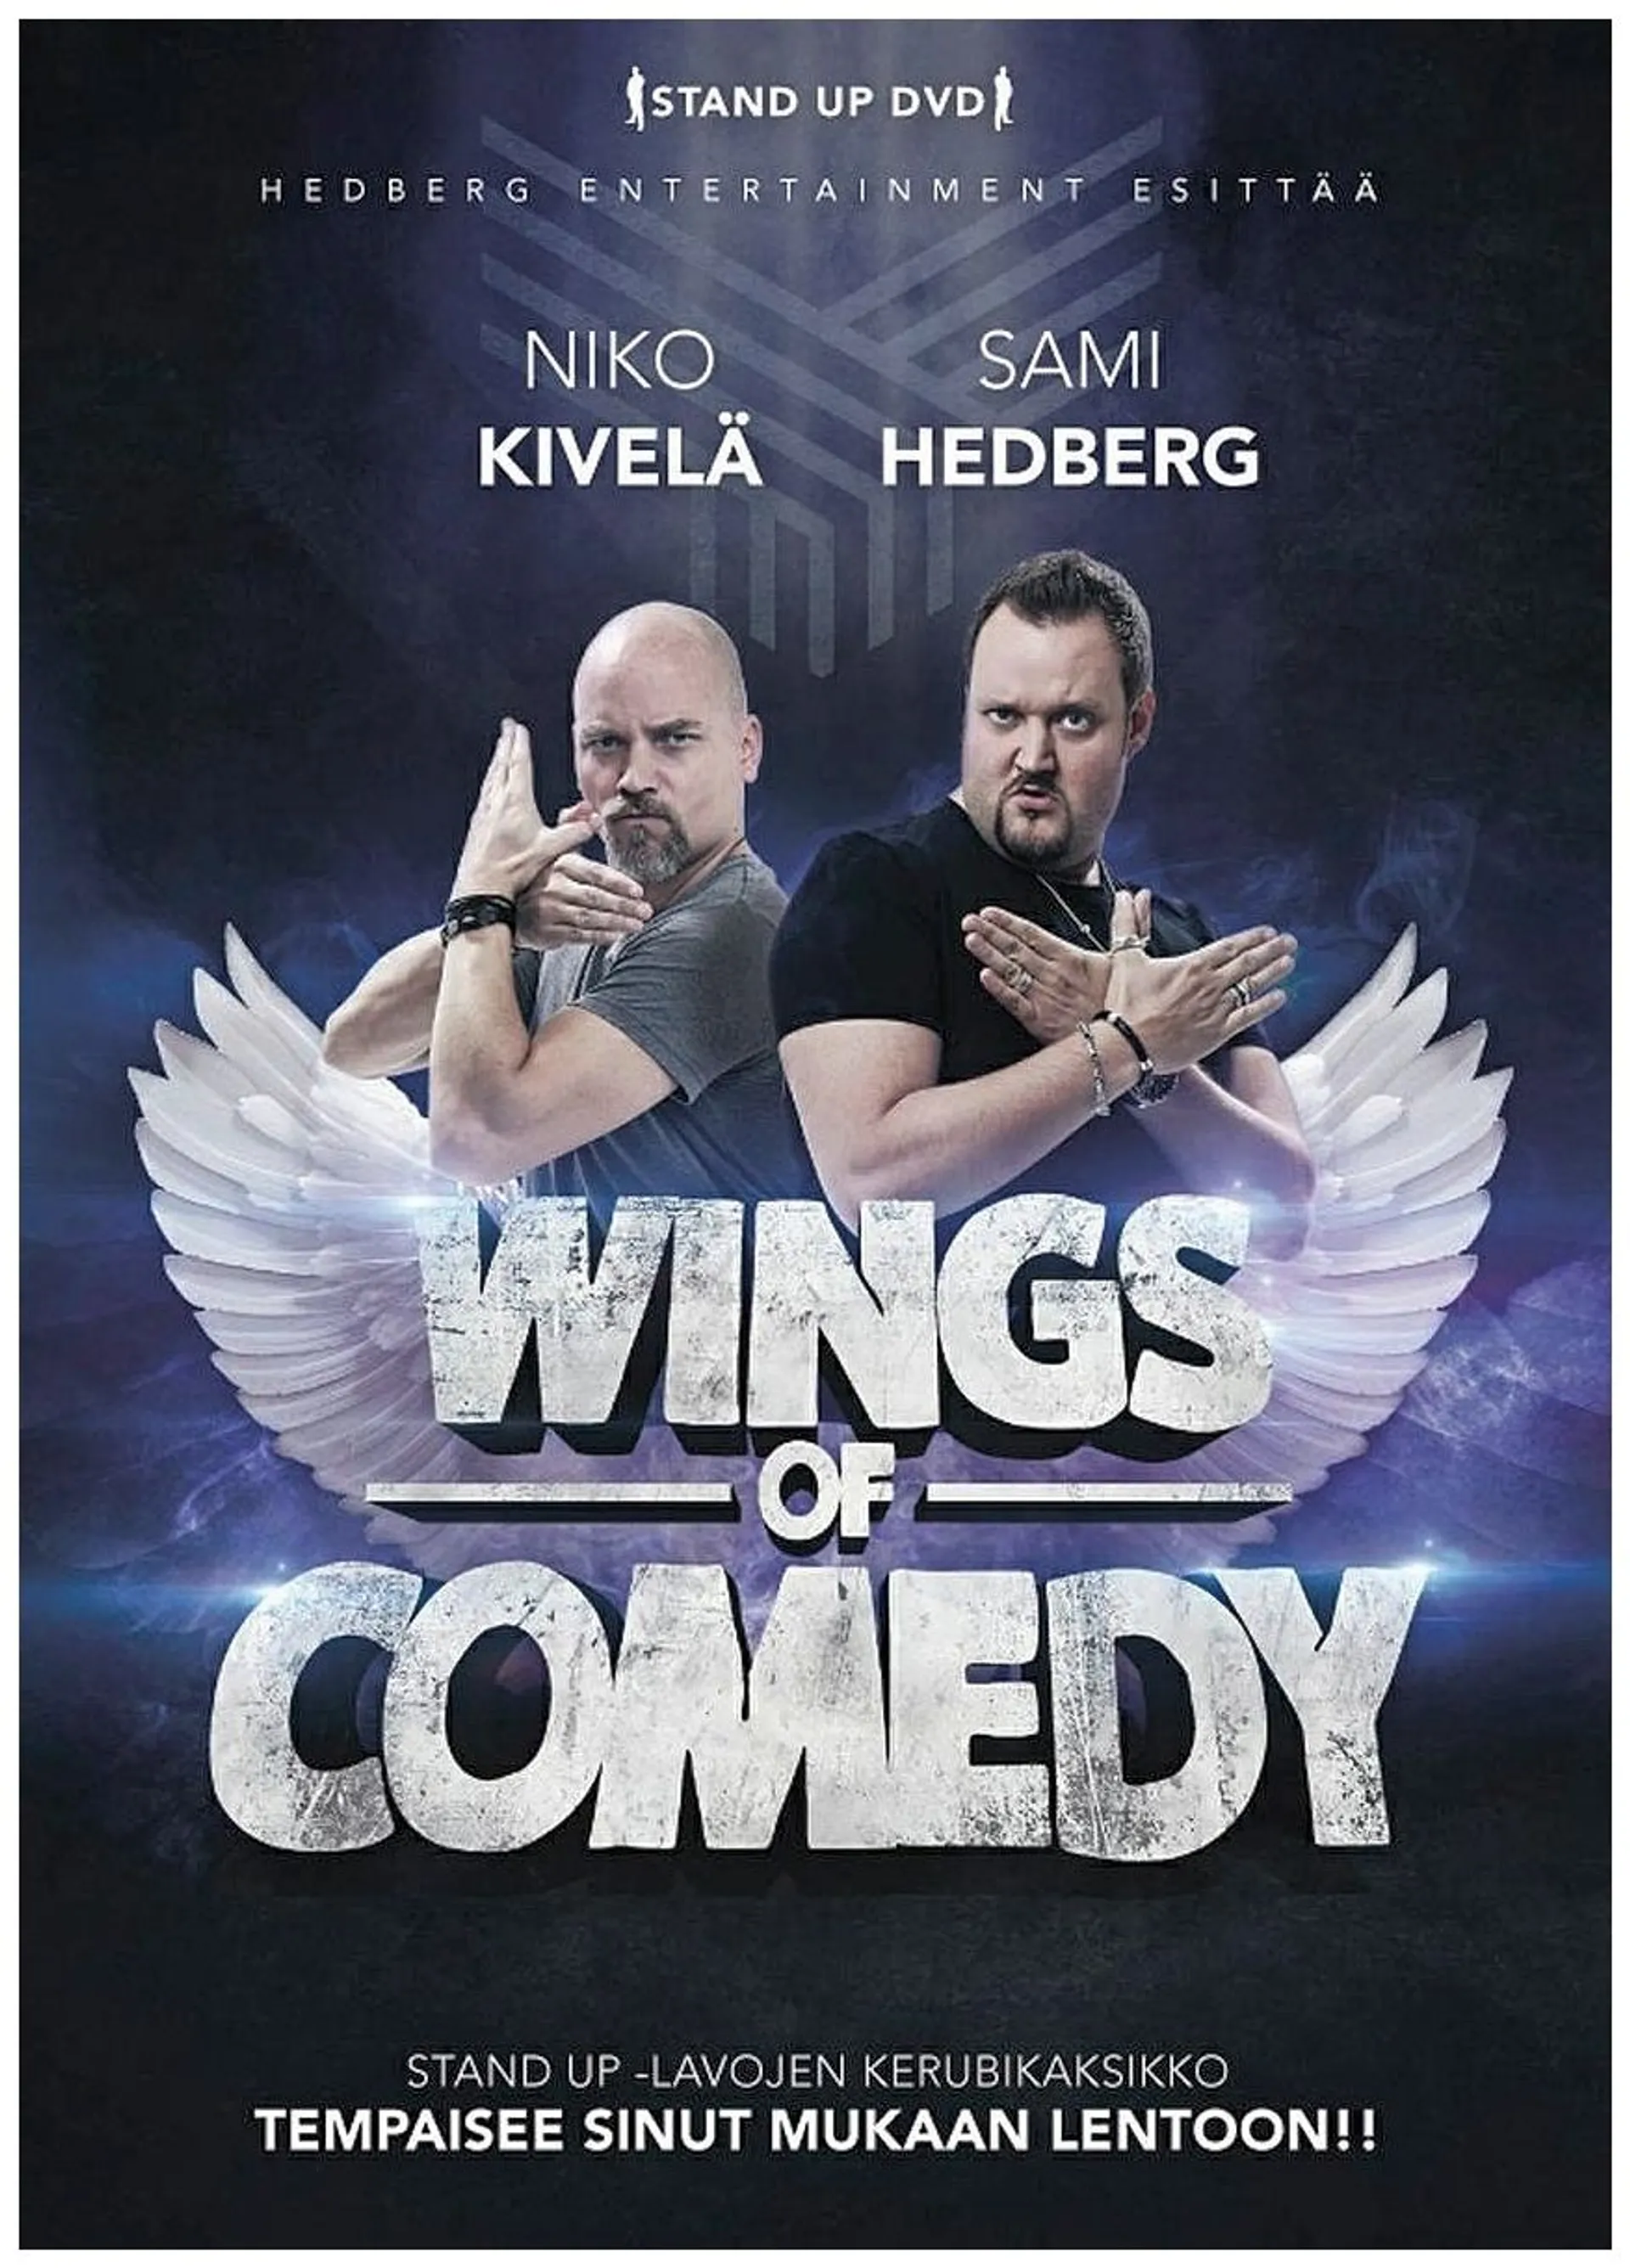 Wings Of Comedy - Sami Hedberg & Niko Kivelä